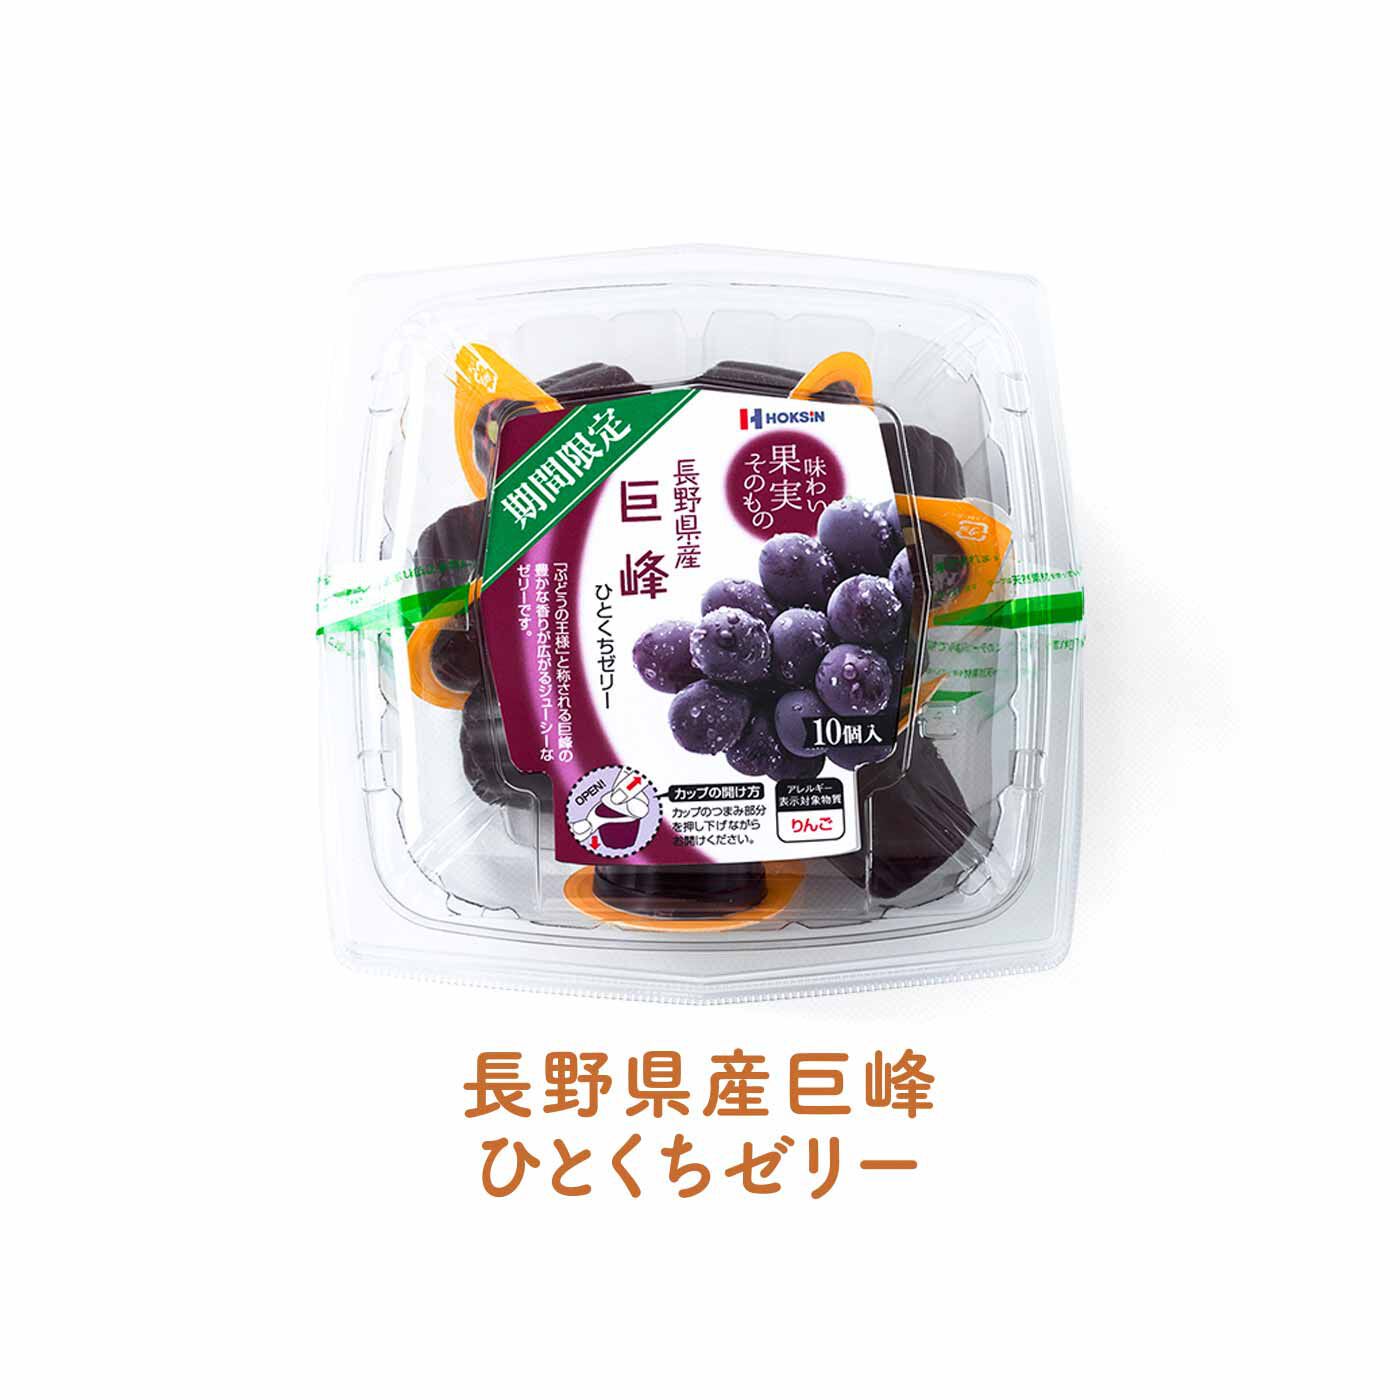 FELISSIMO PARTNERS|「ちょっと」に応えてくれる 日本の果物を味わう ちいさなゼリーの会（8回予約）|「ぶどうの王様」と称される巨峰の豊かな香りが広がるジューシーなゼリーです。